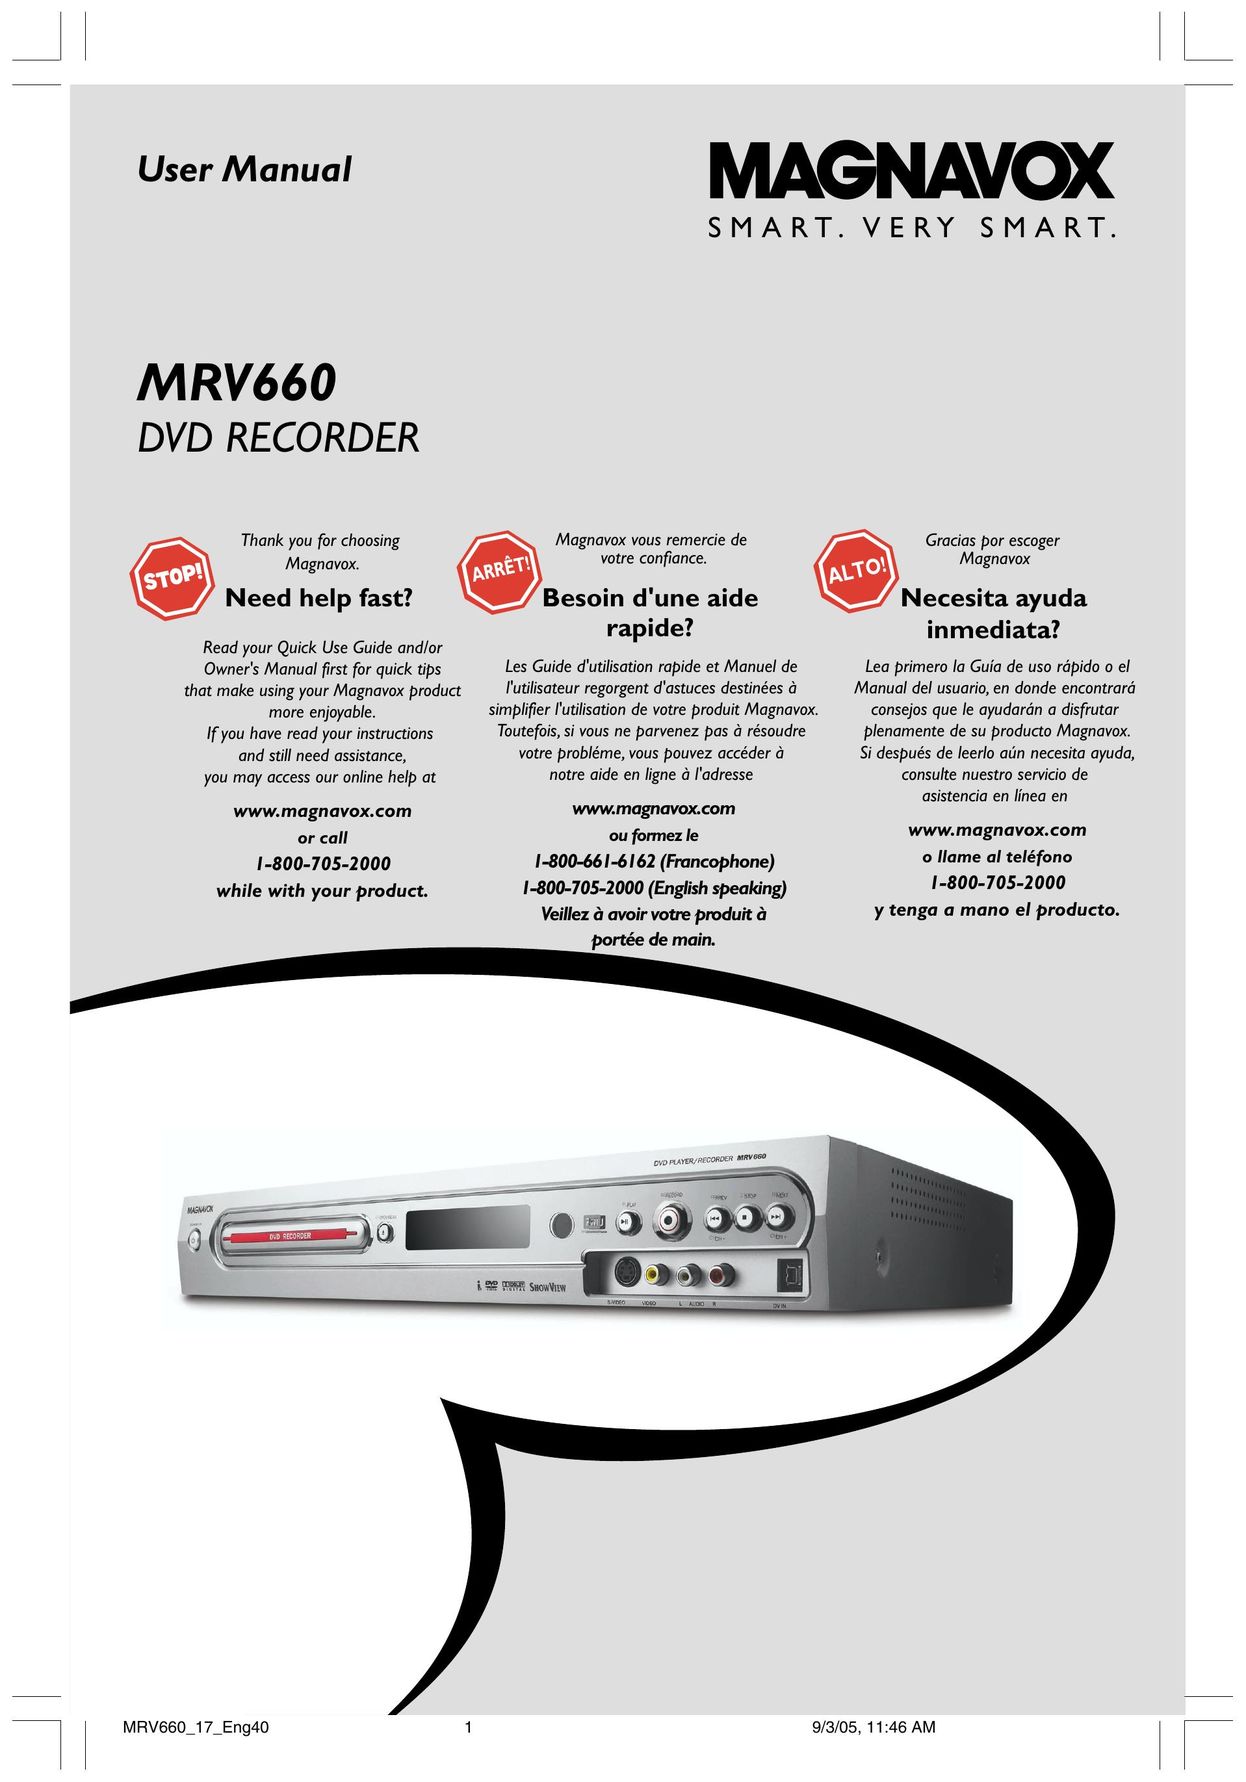 Magnavox MRV660 DVD Recorder User Manual